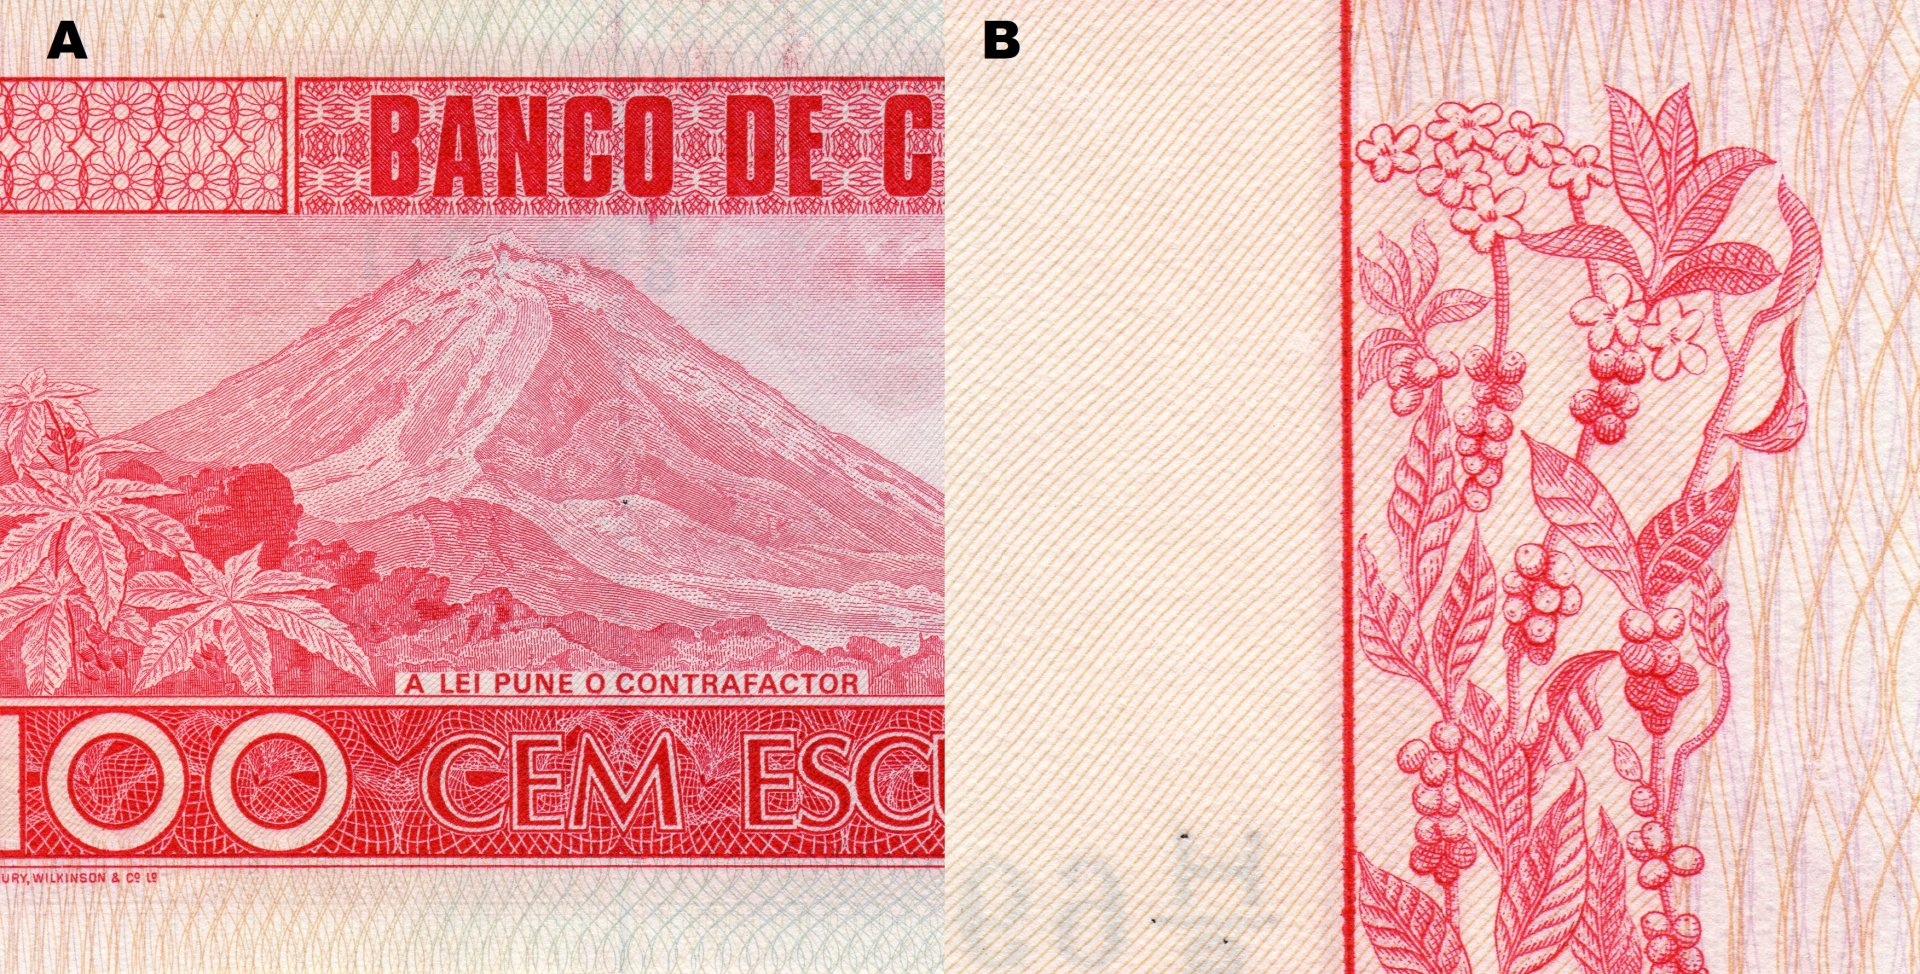 Obr. 4. A) Ústřední motiv reverzu bankovky - pohled na sopku "Pico do Fogo". B) Větvička s listy, květy a postupně dozrávajícími bobulemi kávovníku arabského.